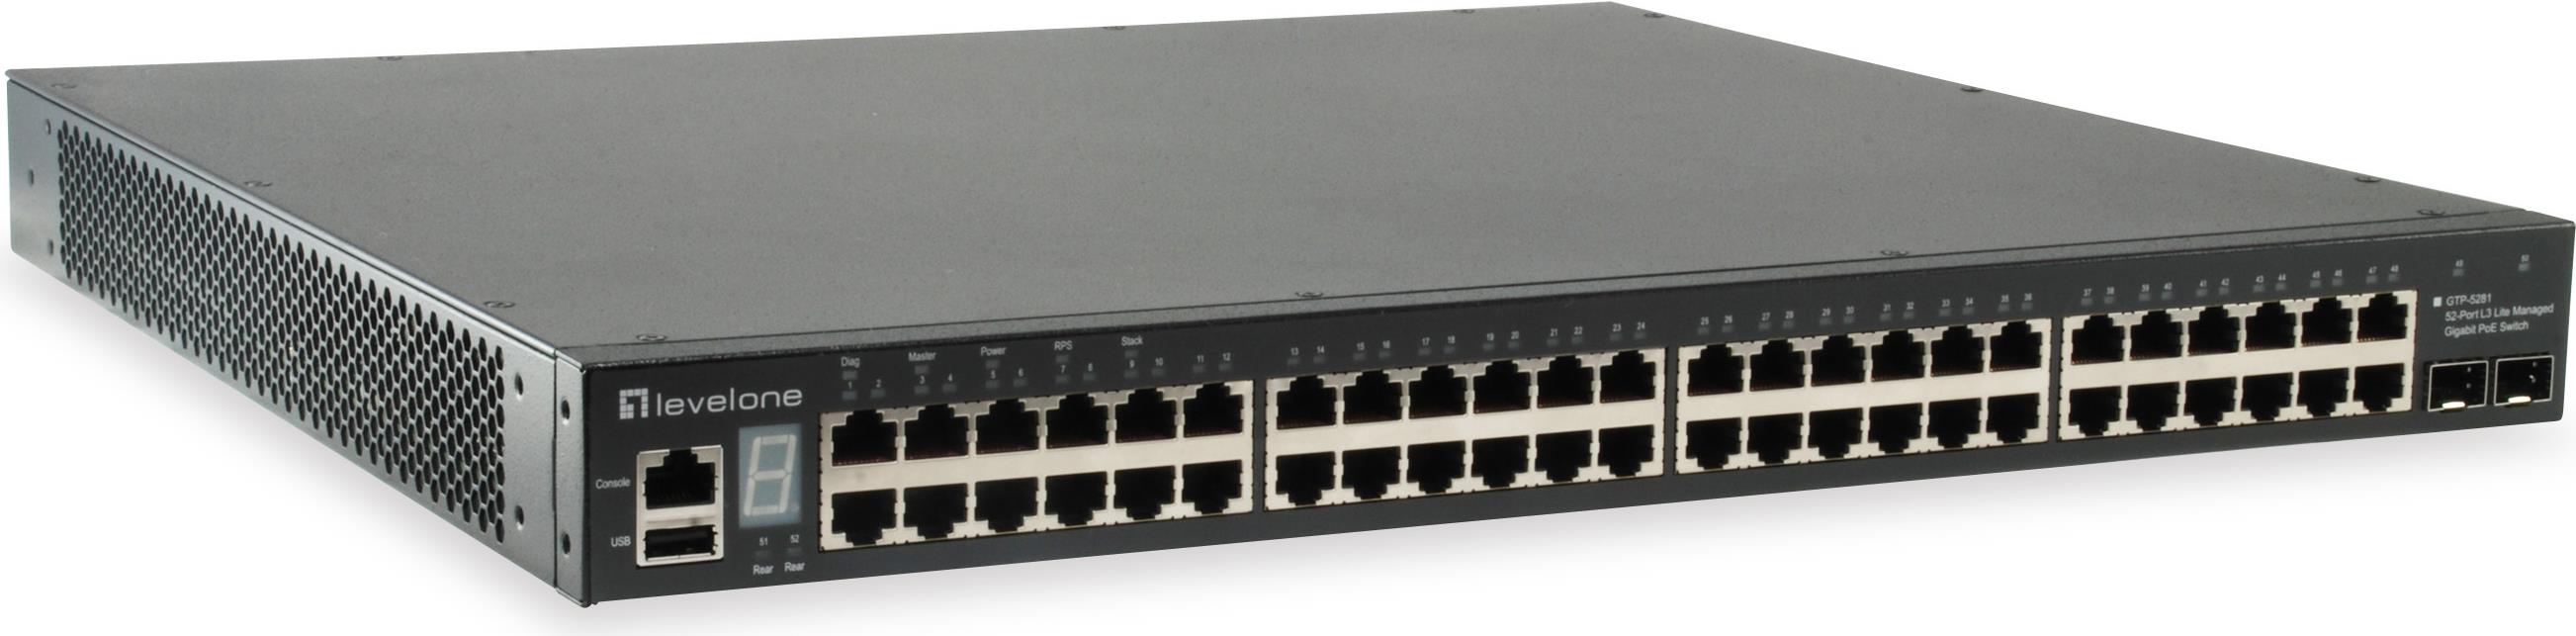 LevelOne GTP-5281 gemanaged L3 Gigabit Ethernet (10/100/1000) Energie Über Ethernet (PoE) Unterstützung Schwarz (GTP-5281)